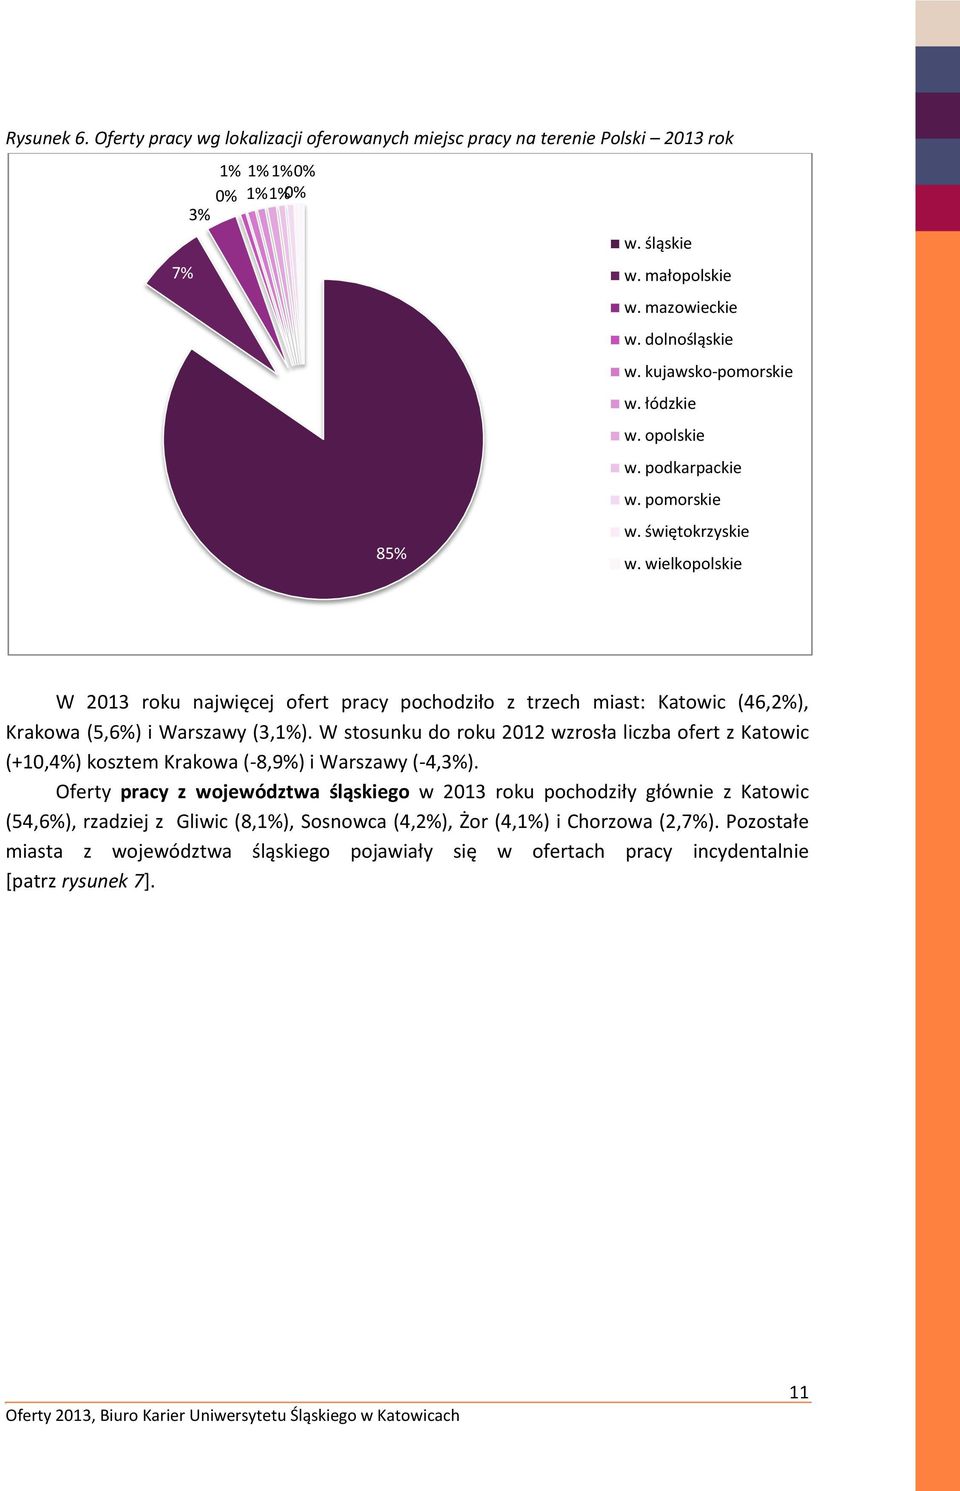 wielkopolskie W 2013 roku najwięcej ofert pracy pochodziło z trzech miast: Katowic (46,2%), Krakowa (5,6%) i Warszawy (3,1%).